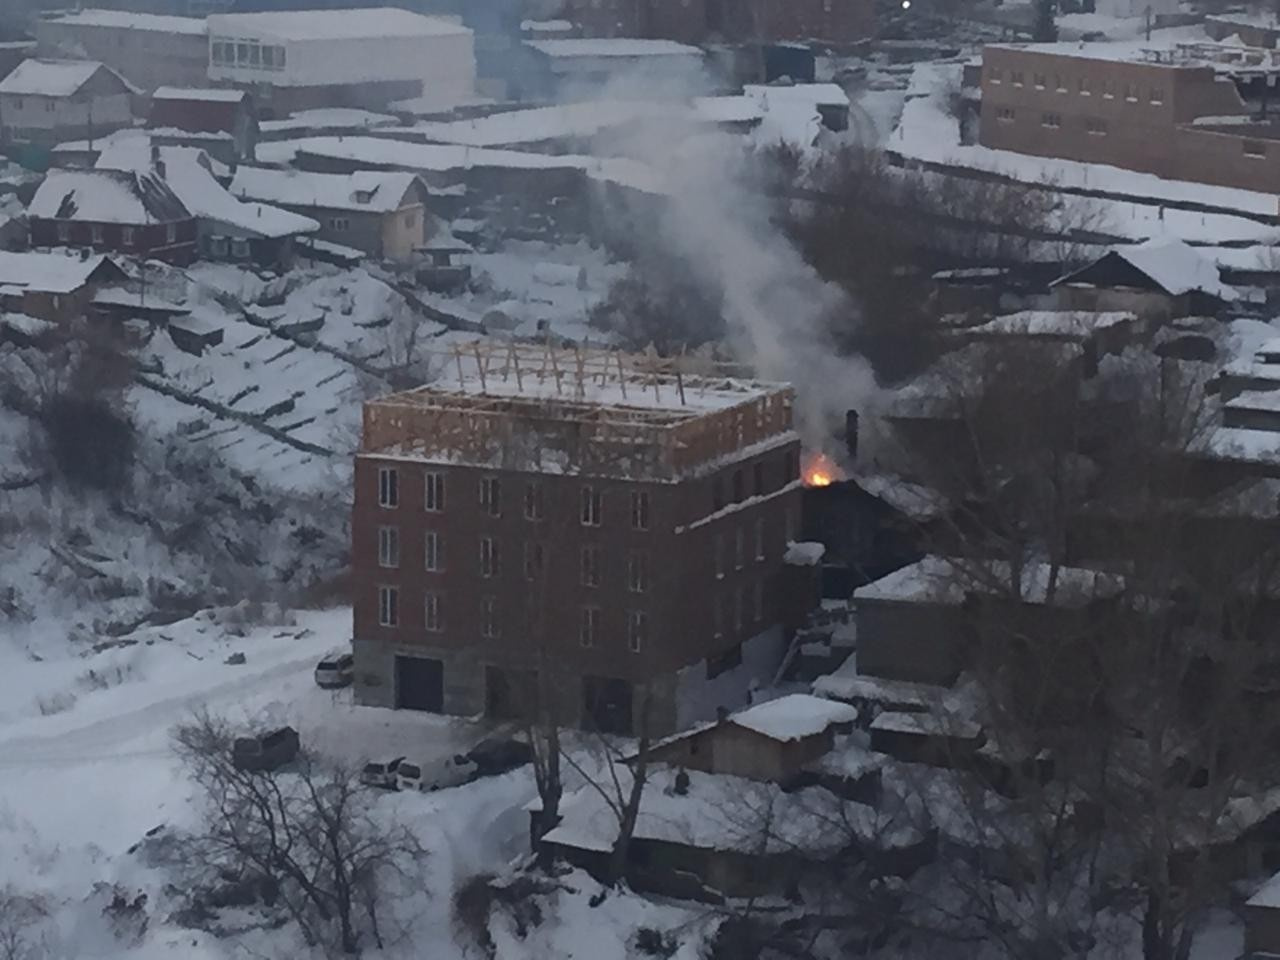 По информации очевидцев, жильцам дома удалось выйти на улицу до того, как огонь охватил всё здание